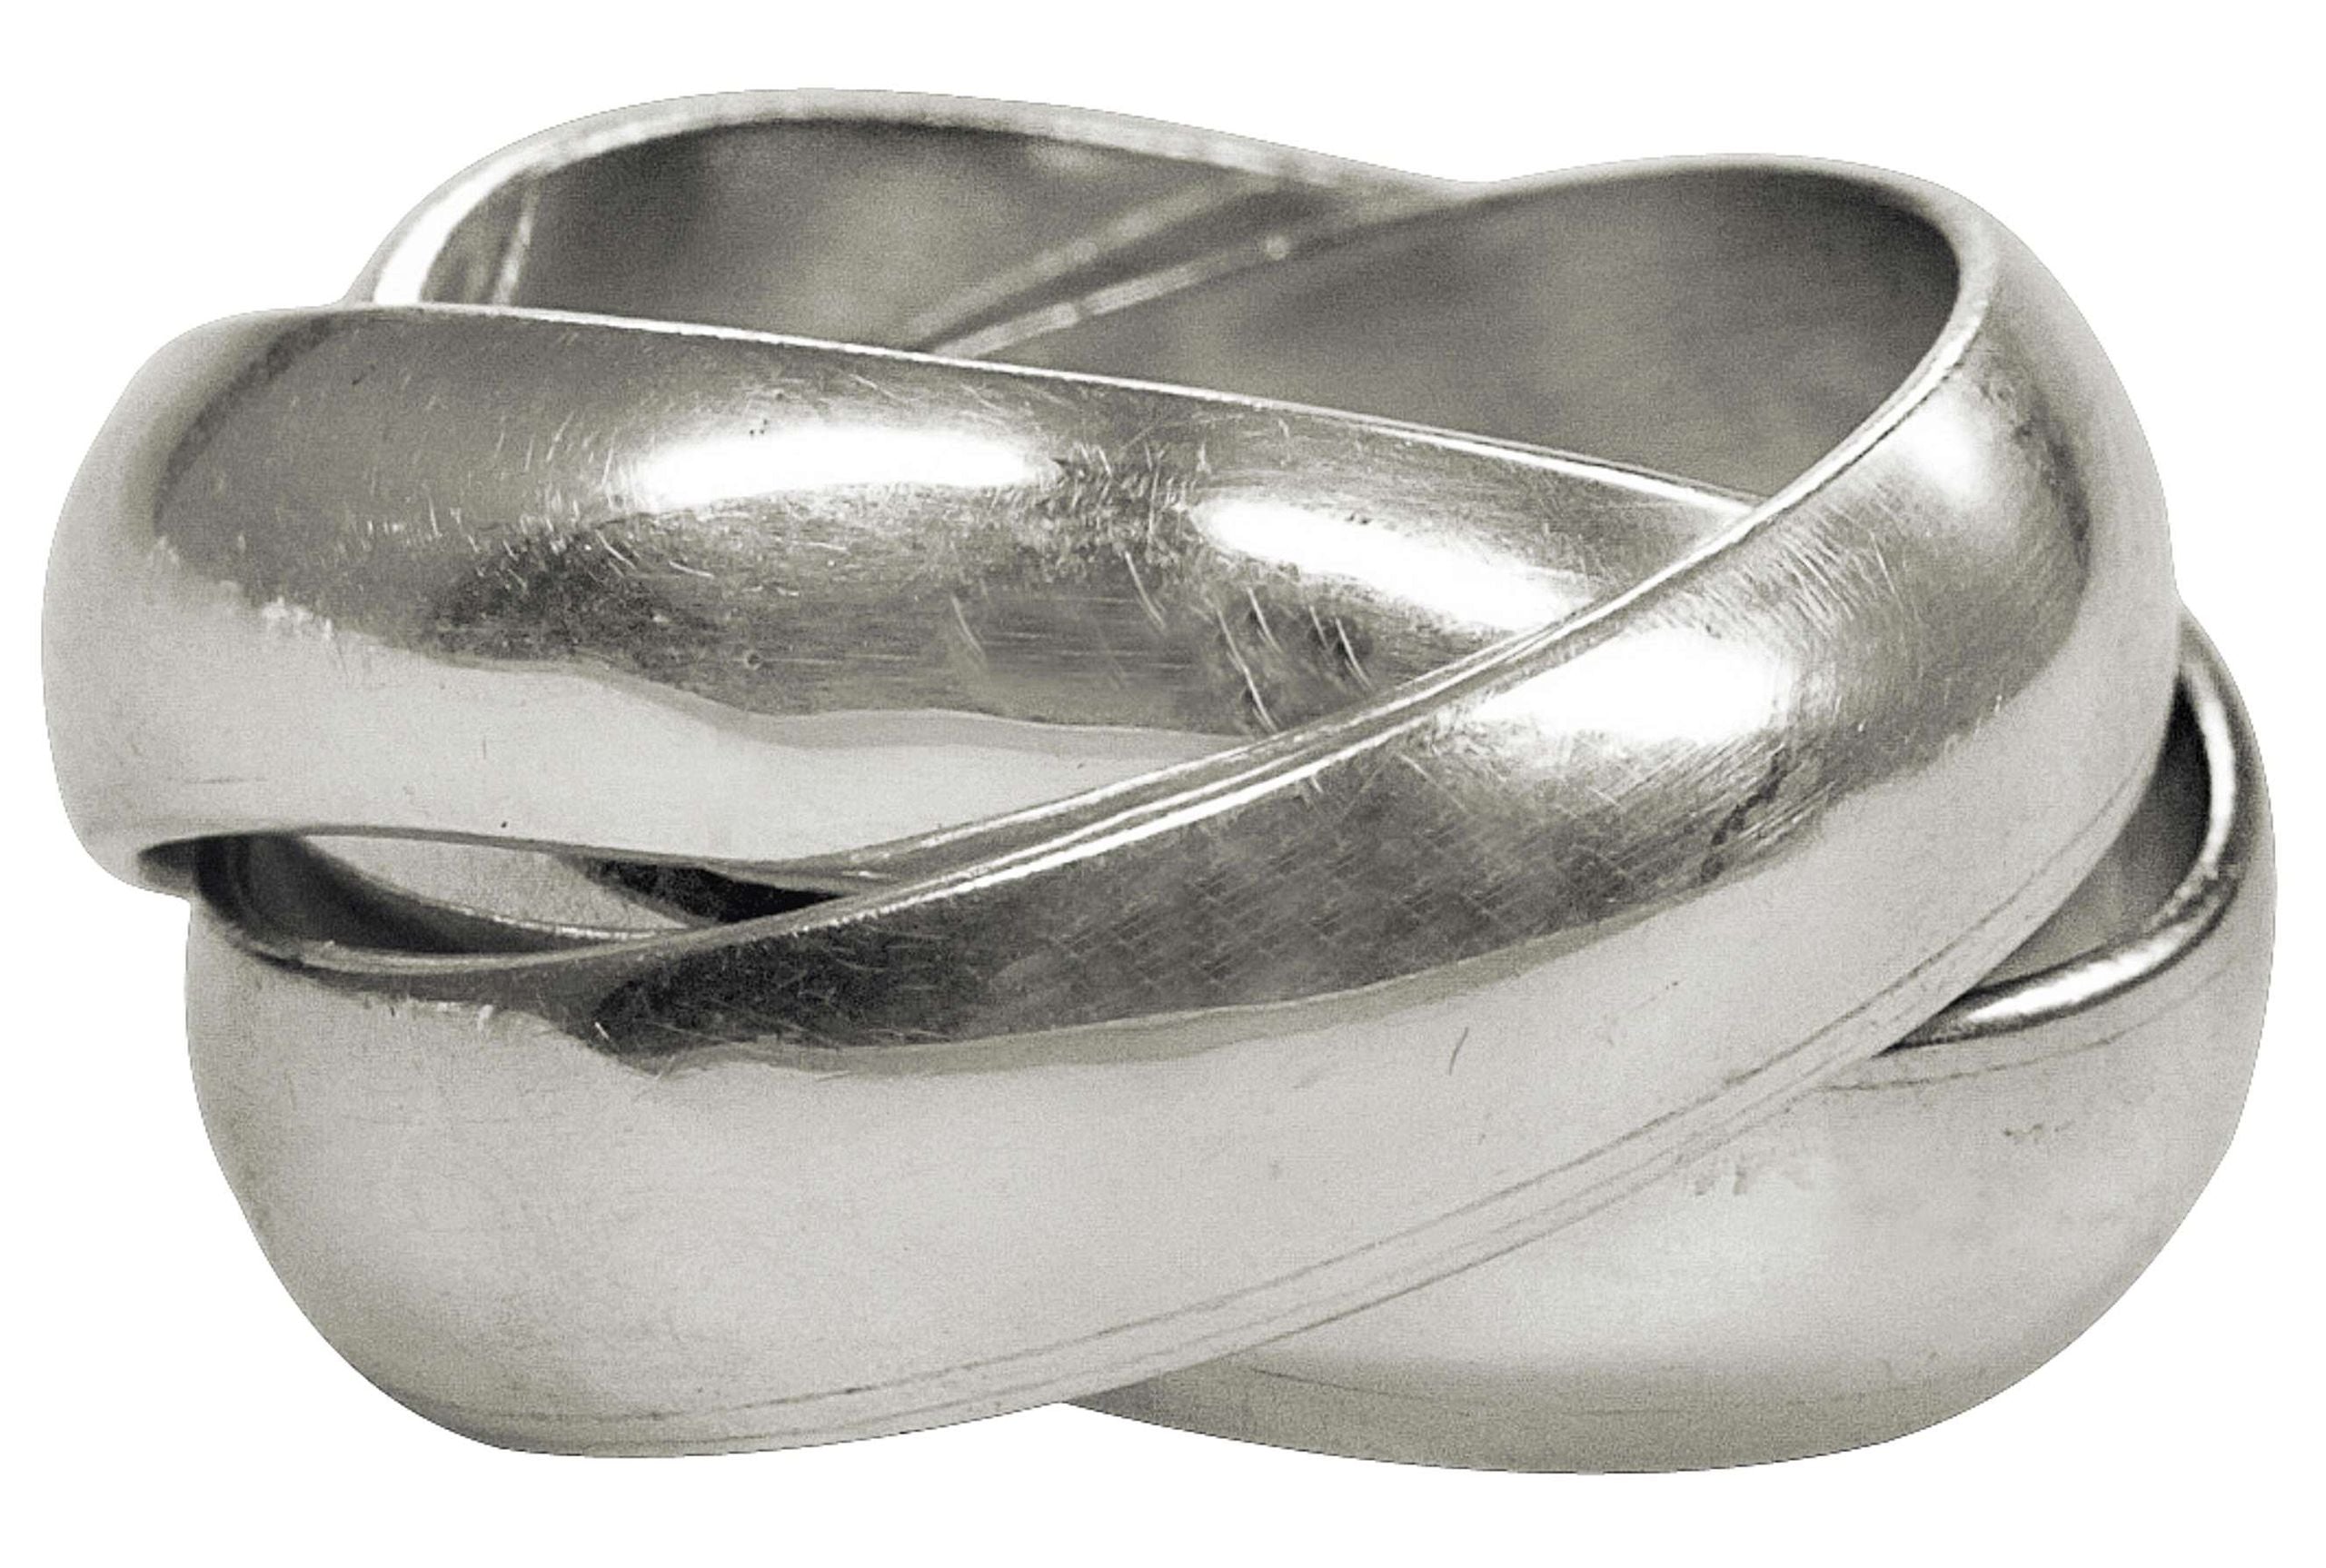 Geschmiedeter Dreierring aus Silber in den Größen 64 bis 70 mit glänzender Oberfläche. Die drei einzelnen Ringe sind frei beweglich.